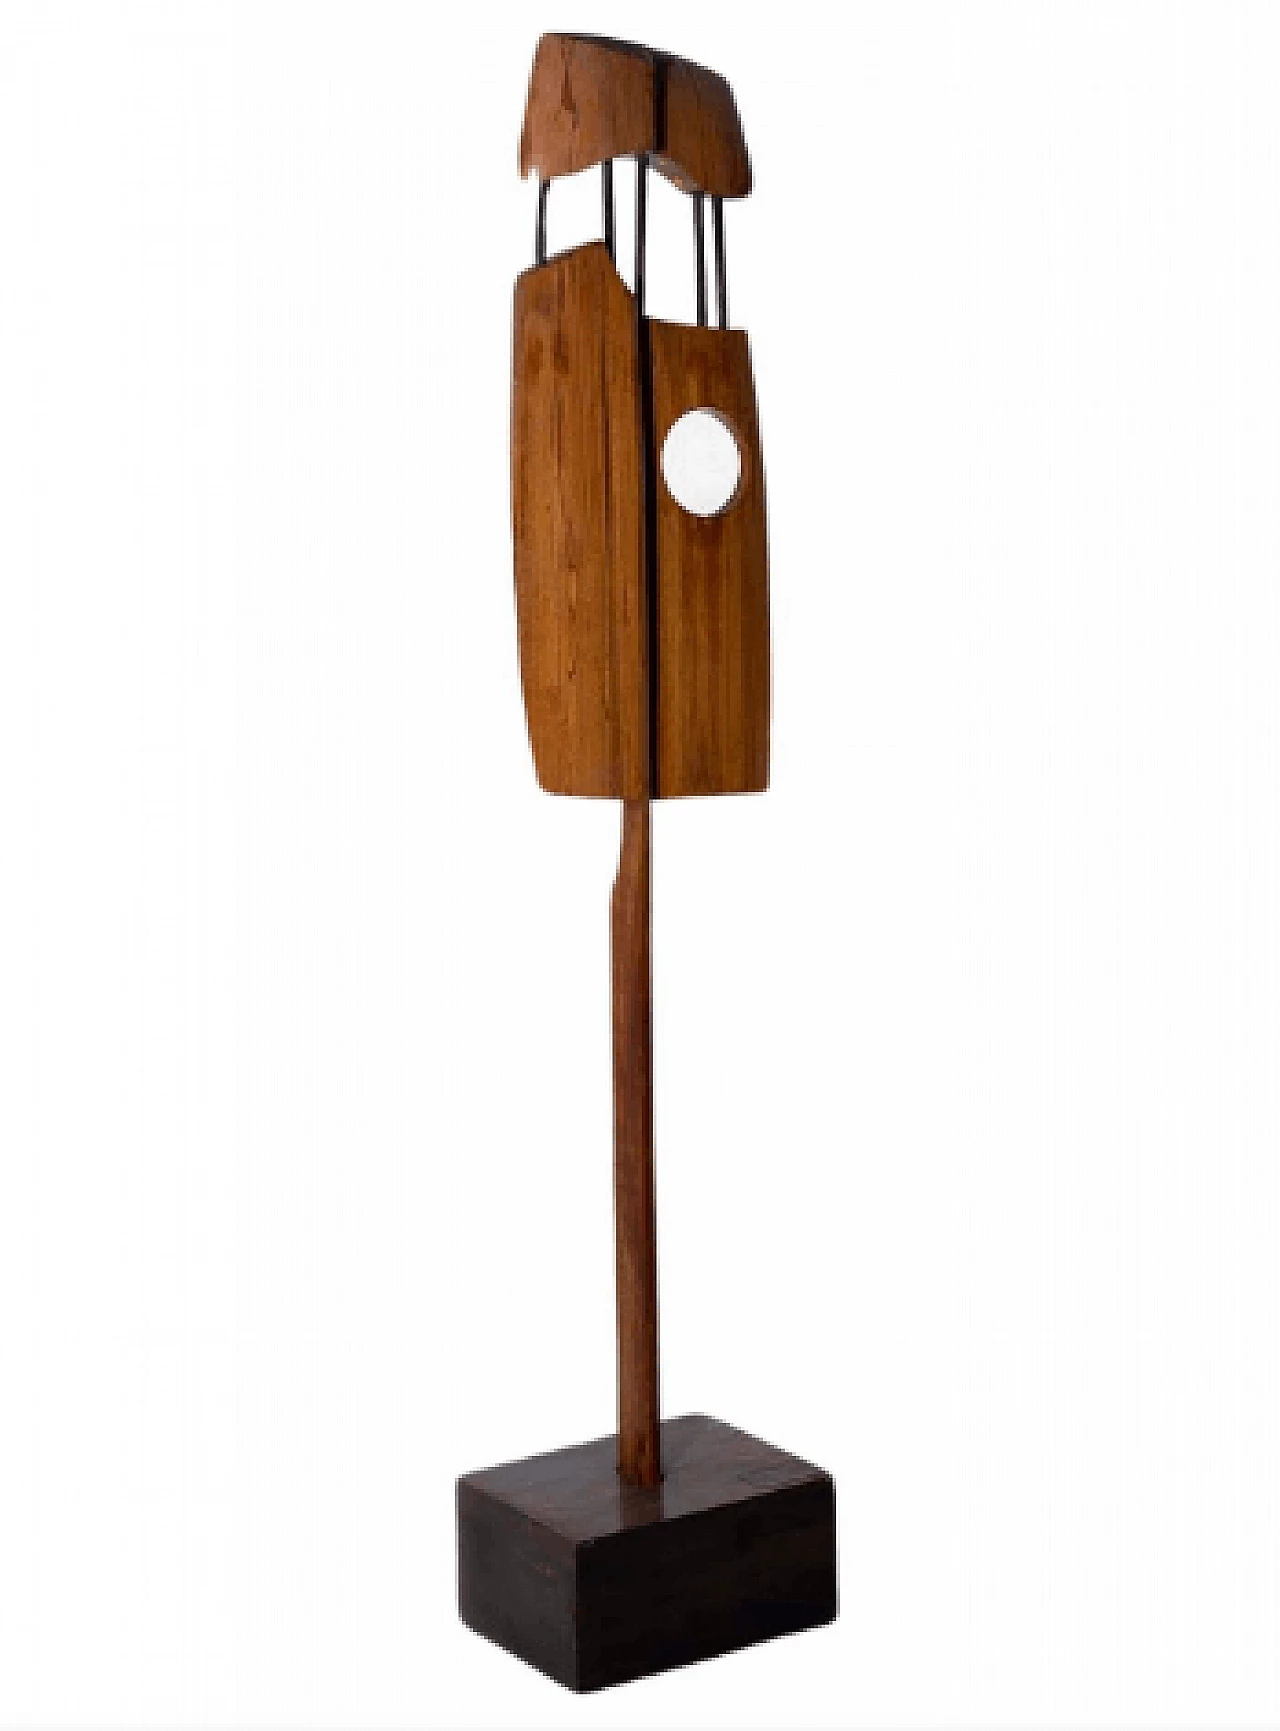 Elvio Becheroni, Totem, wood and iron sculpture, 1988 1